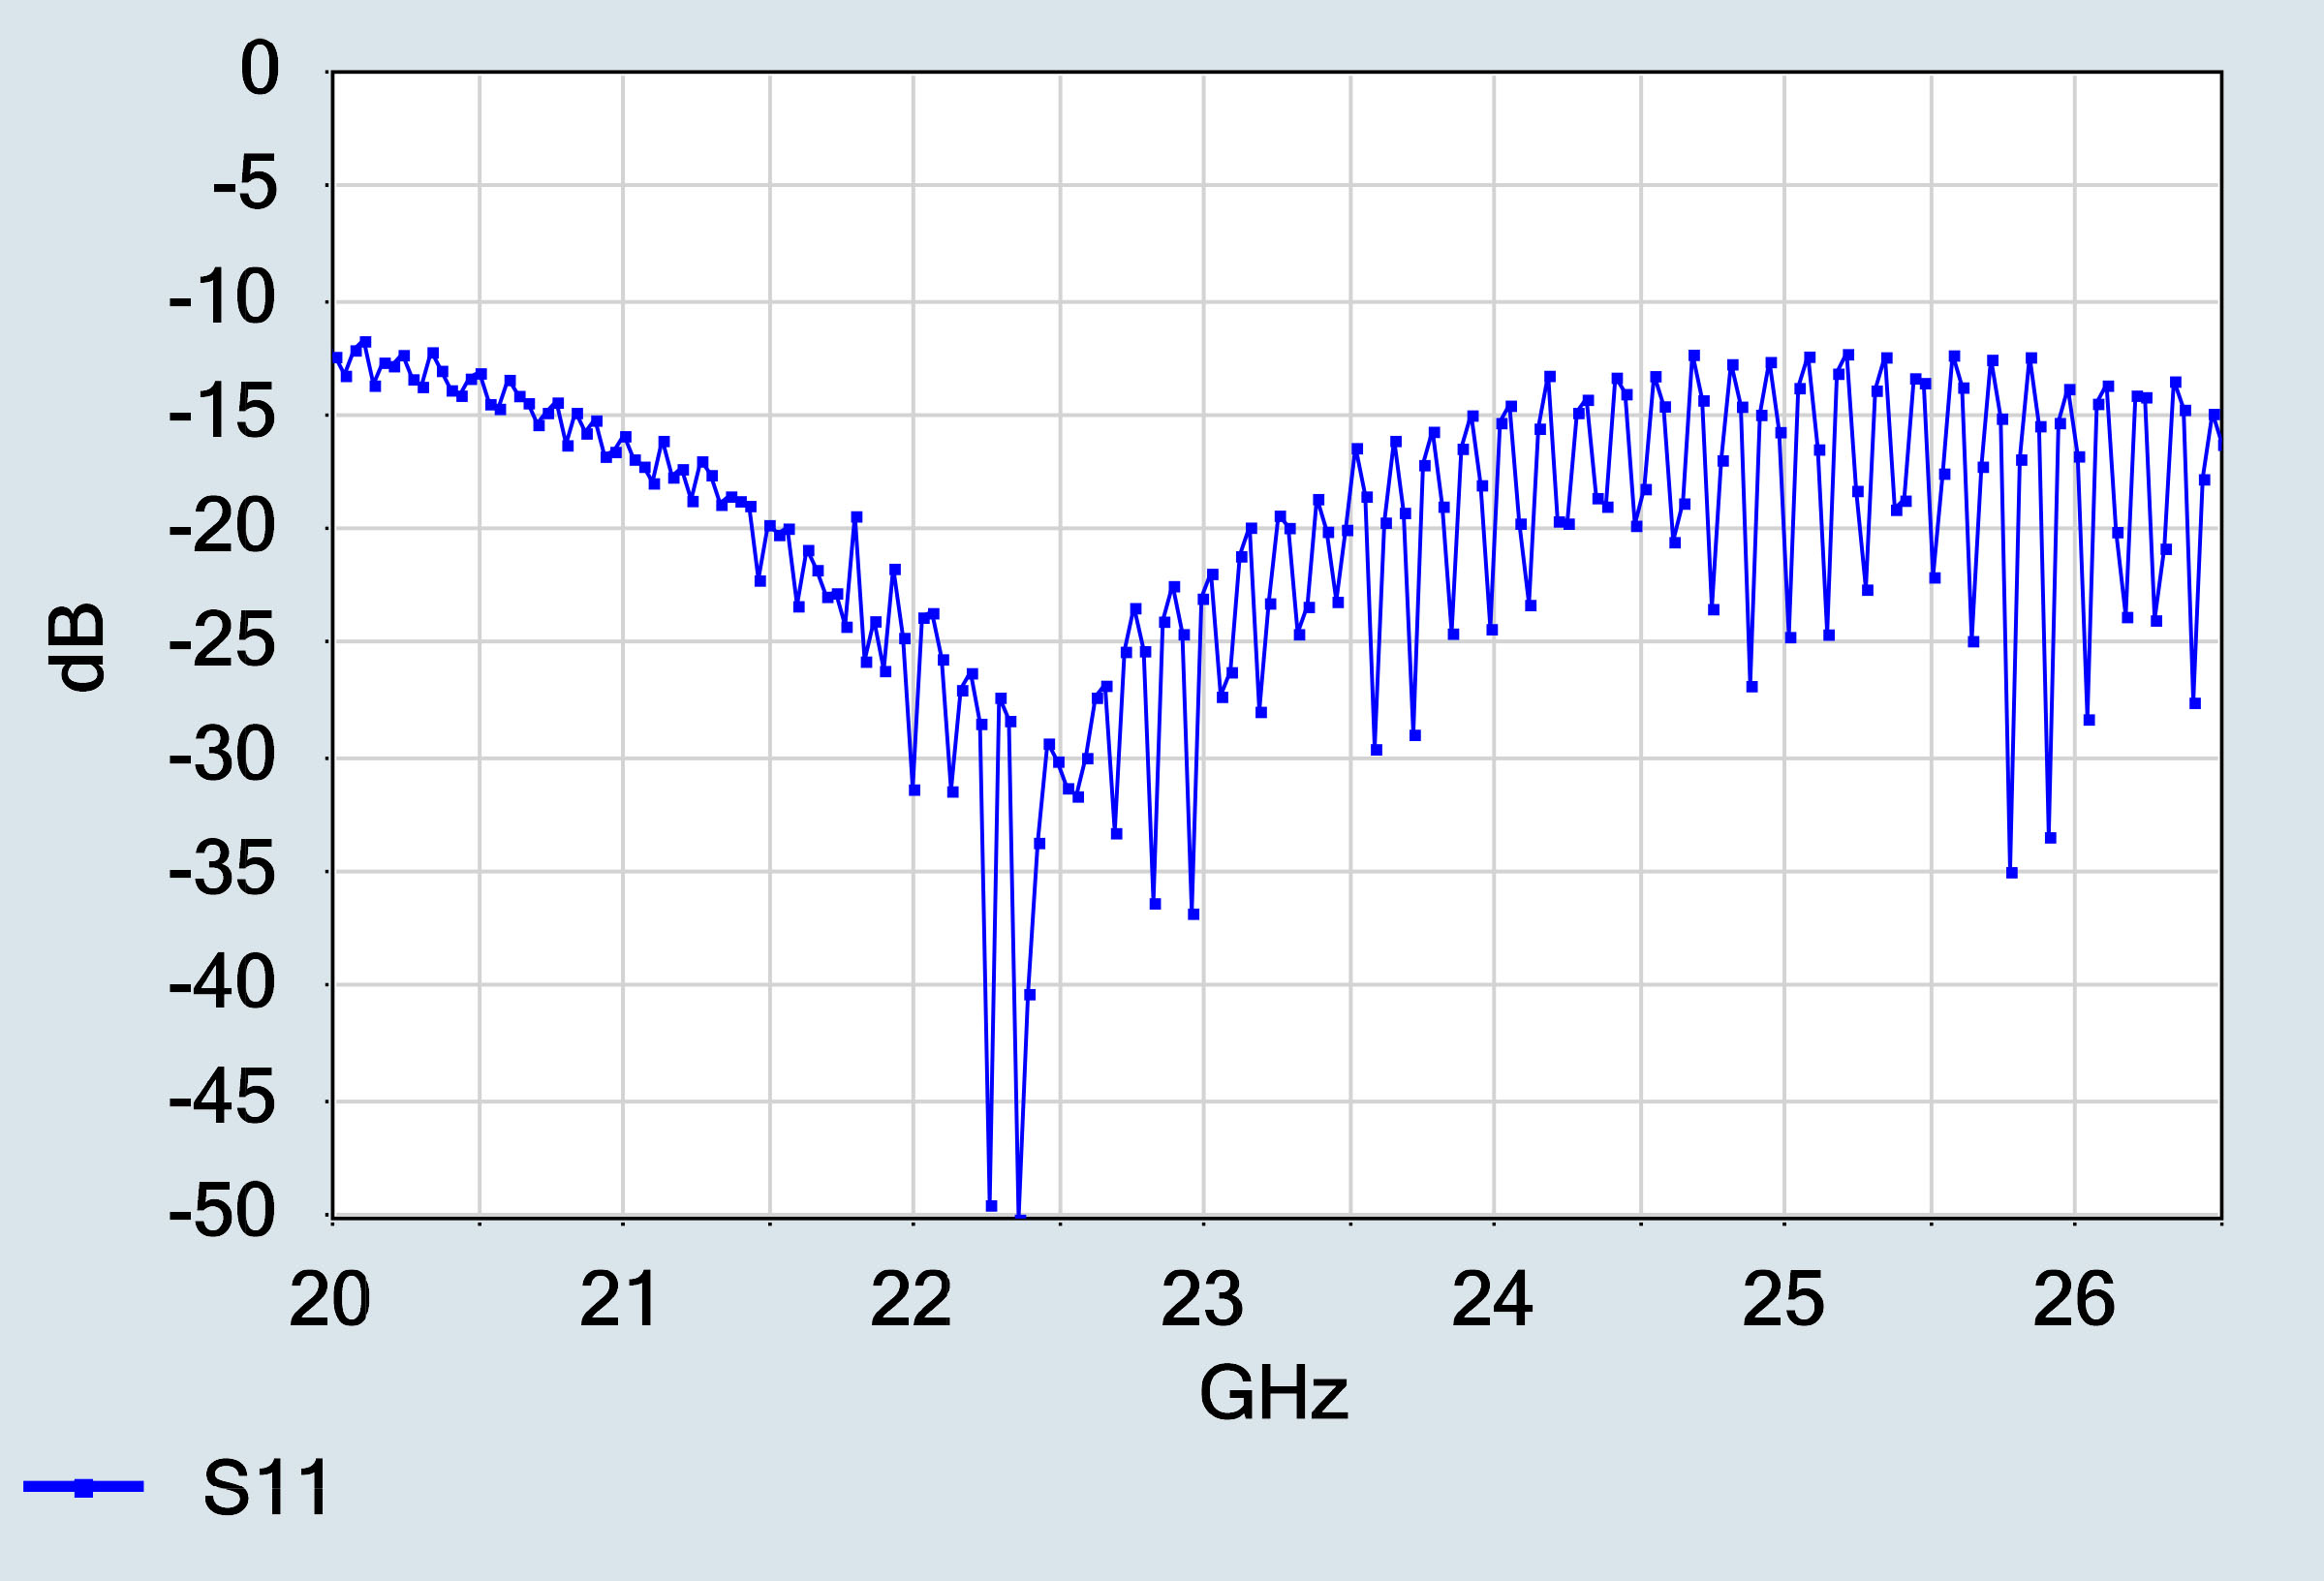 24 GHz antenna s-Parameter